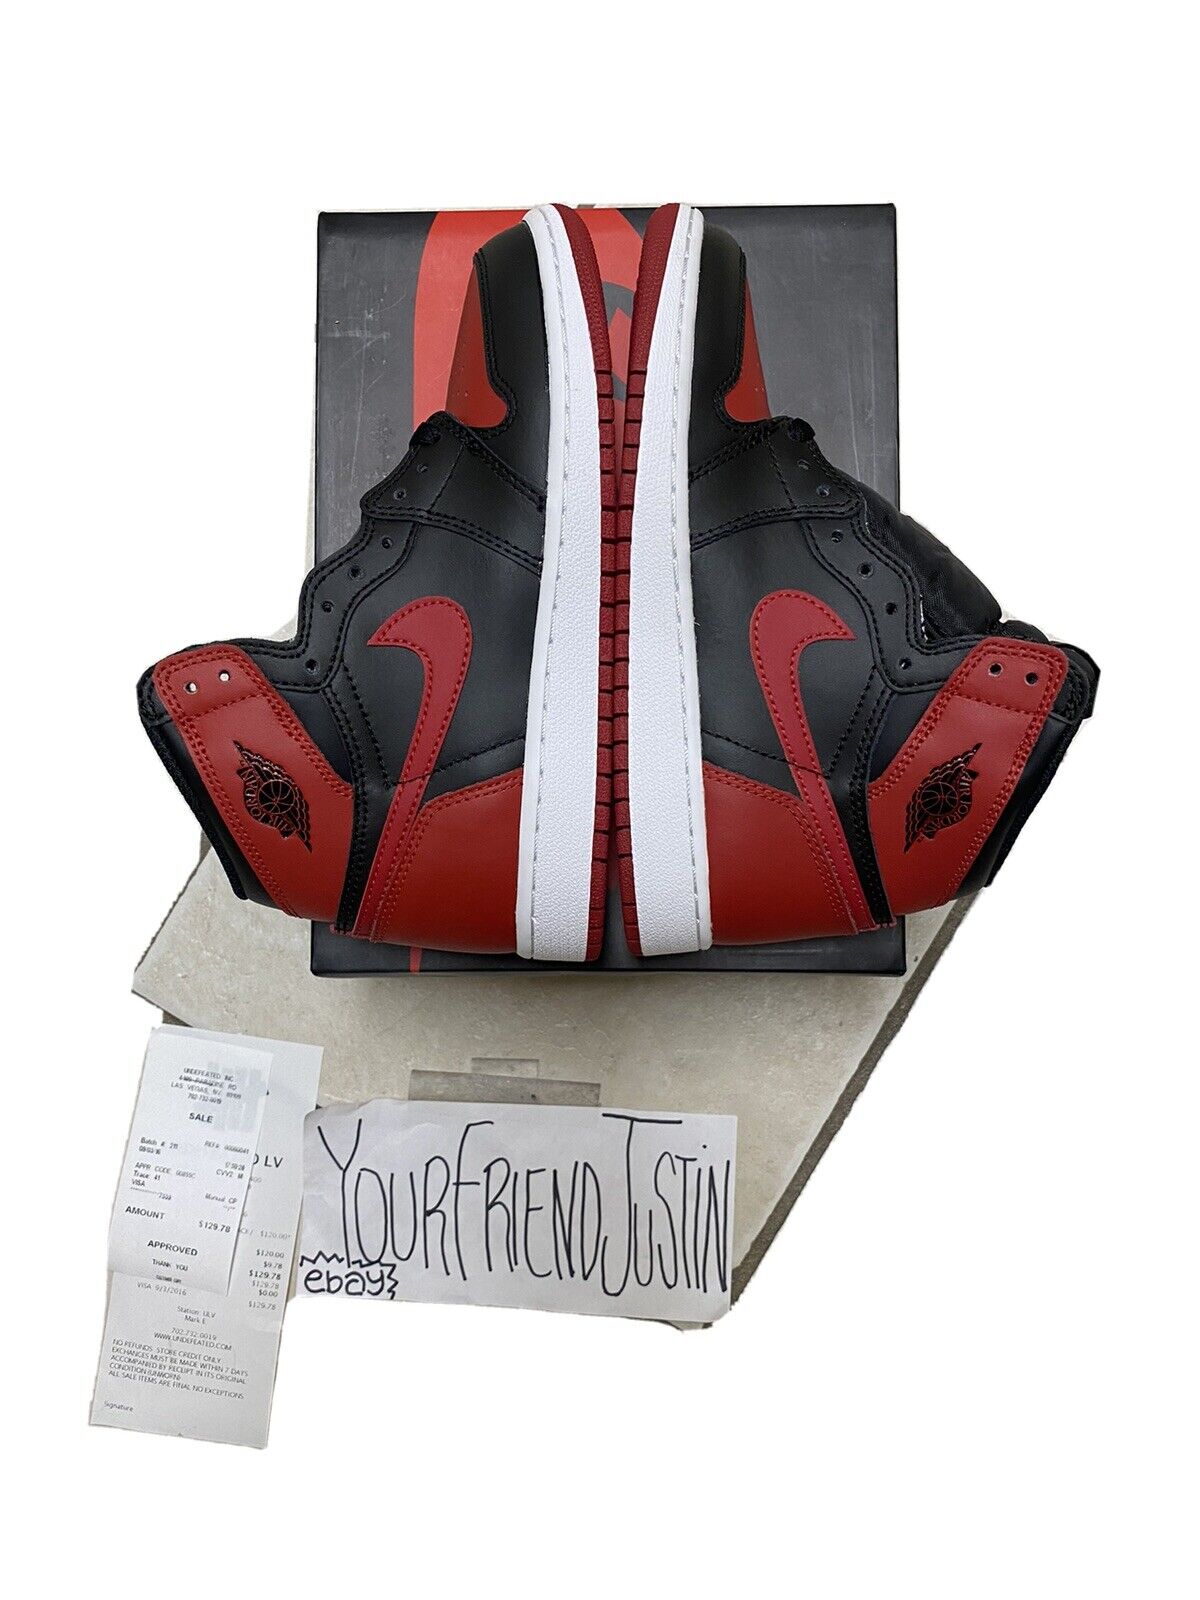 Nike Air Jordan 1 Retro HIGH OG BG Banned (GS) Bred 575441-001 